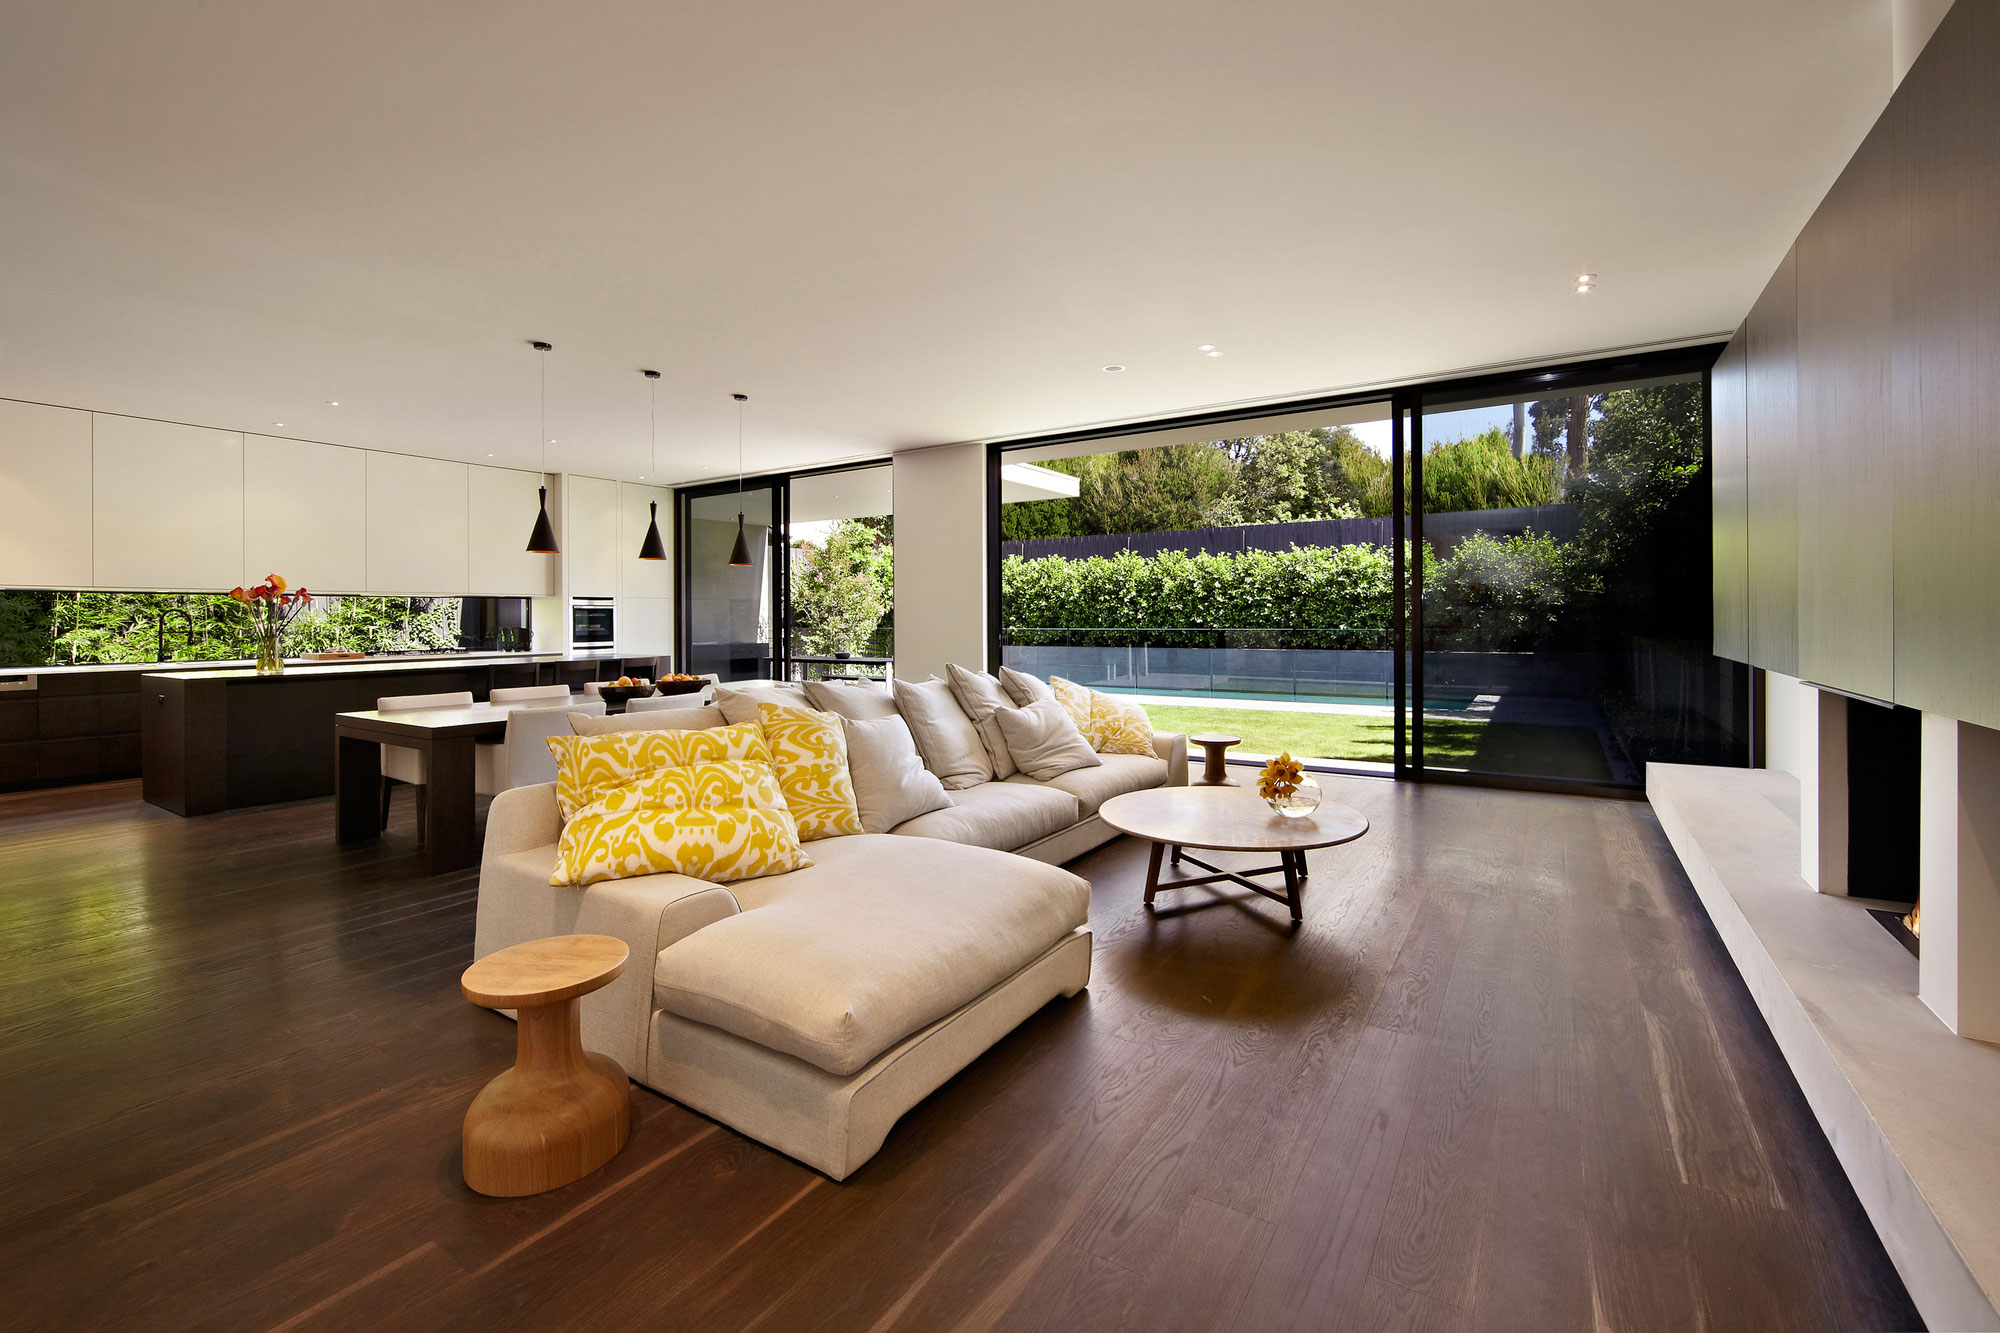 General 2000x1333 house modern interior design luxury architecture